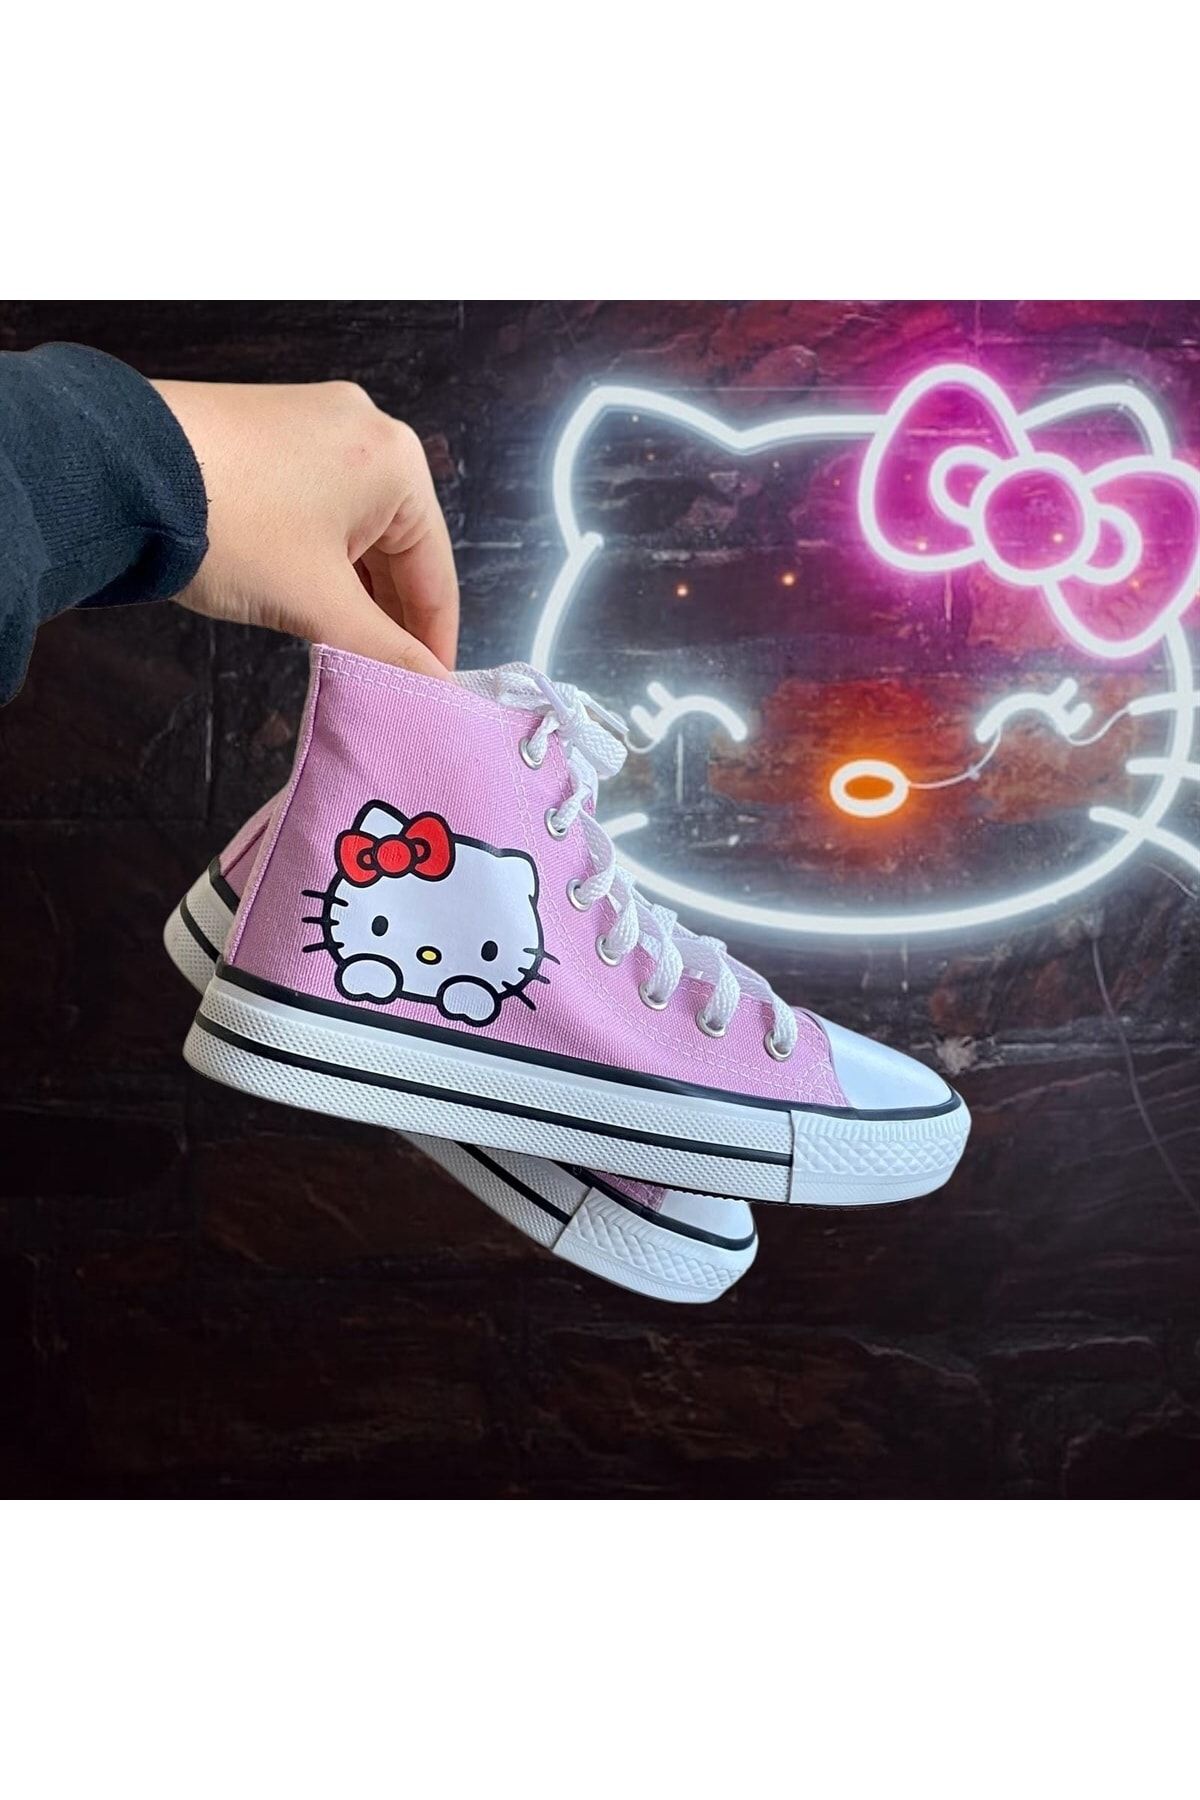 Touz Moda Dompuleri Moda Hello Kitty Baskılı Pembe Kanvas Ayakkabı